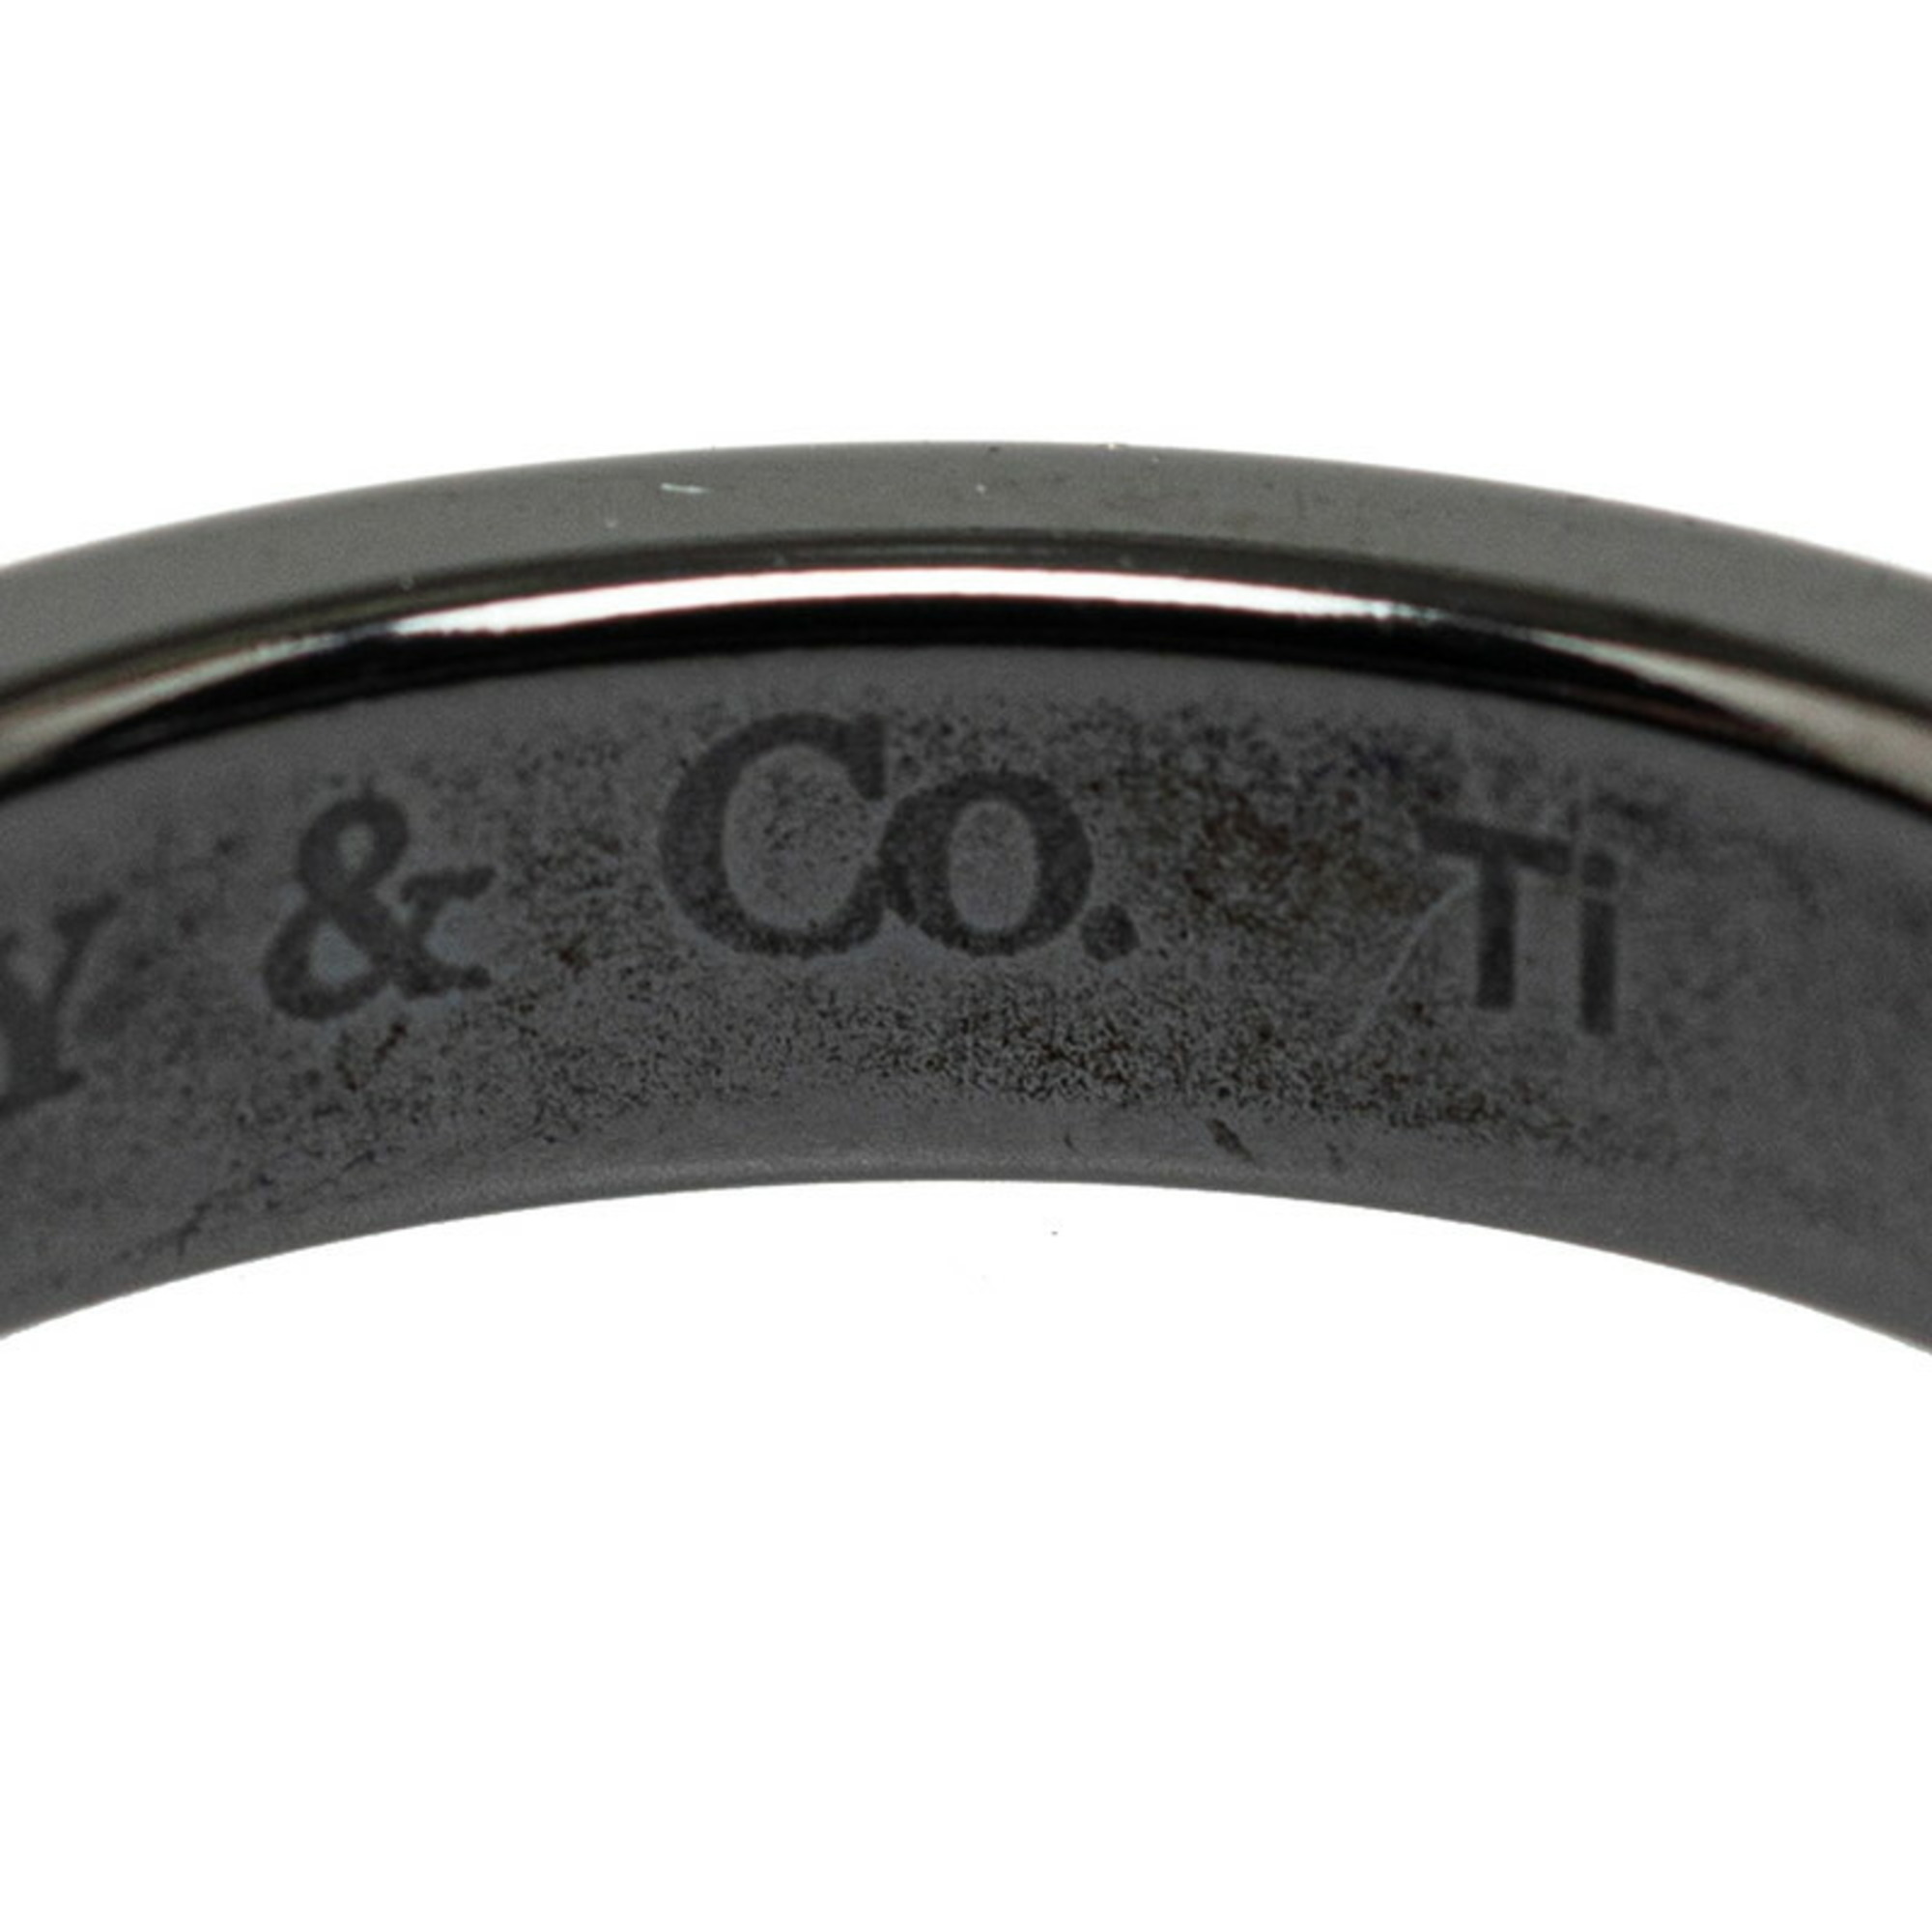 Tiffany Narrow 1837 Ring, SV925 Silver, Women's, TIFFANY&Co.